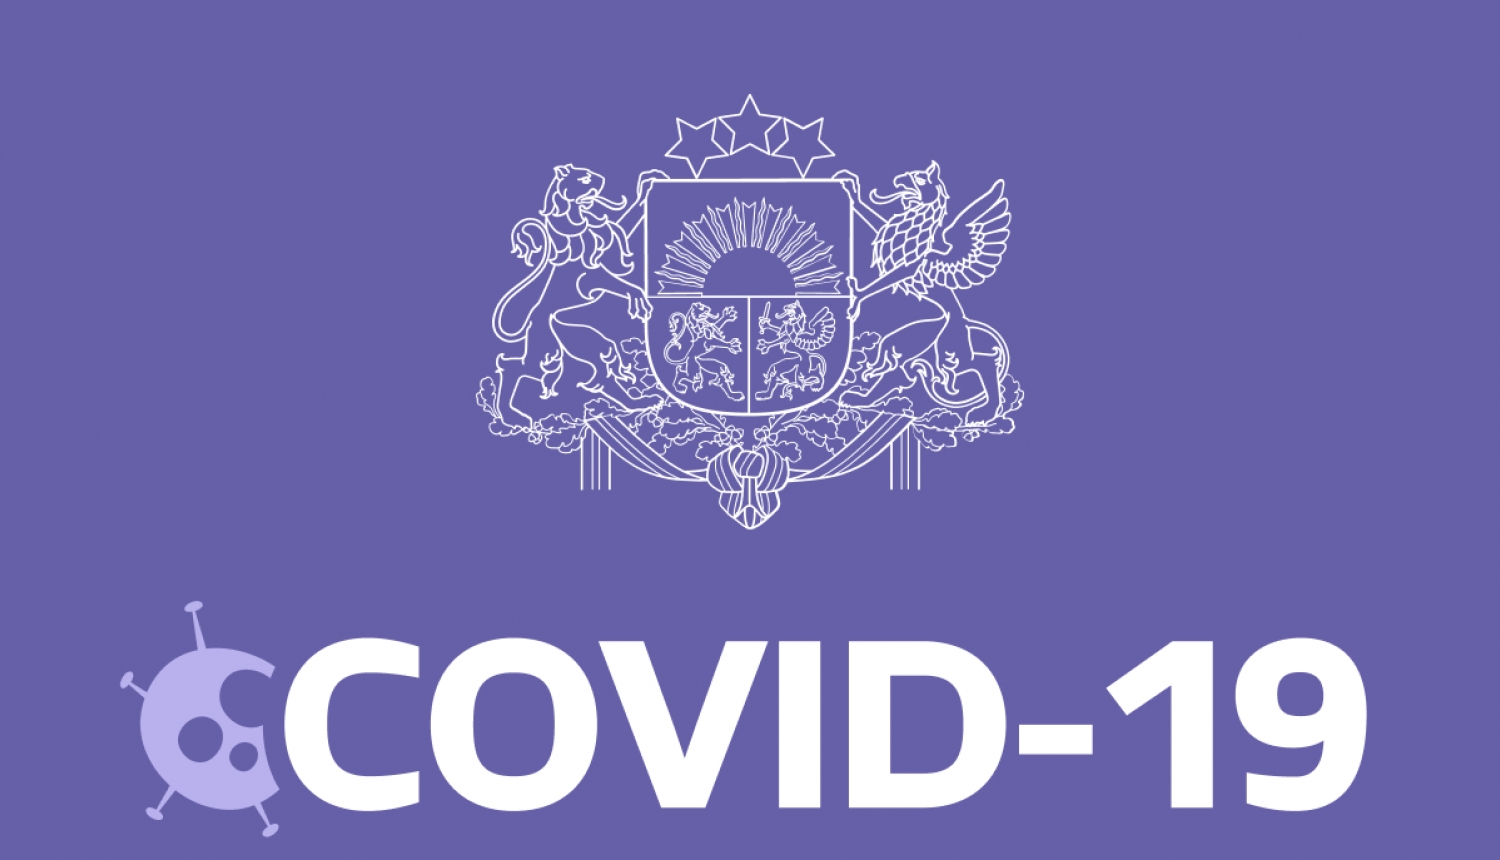 No 1. jūnija ikvienam ir iespēja elektroniski iegūt digitālu sertifikātu, kas apliecina vakcinācijas pret Covid-19 vai vīrusa pārslimošanas faktu